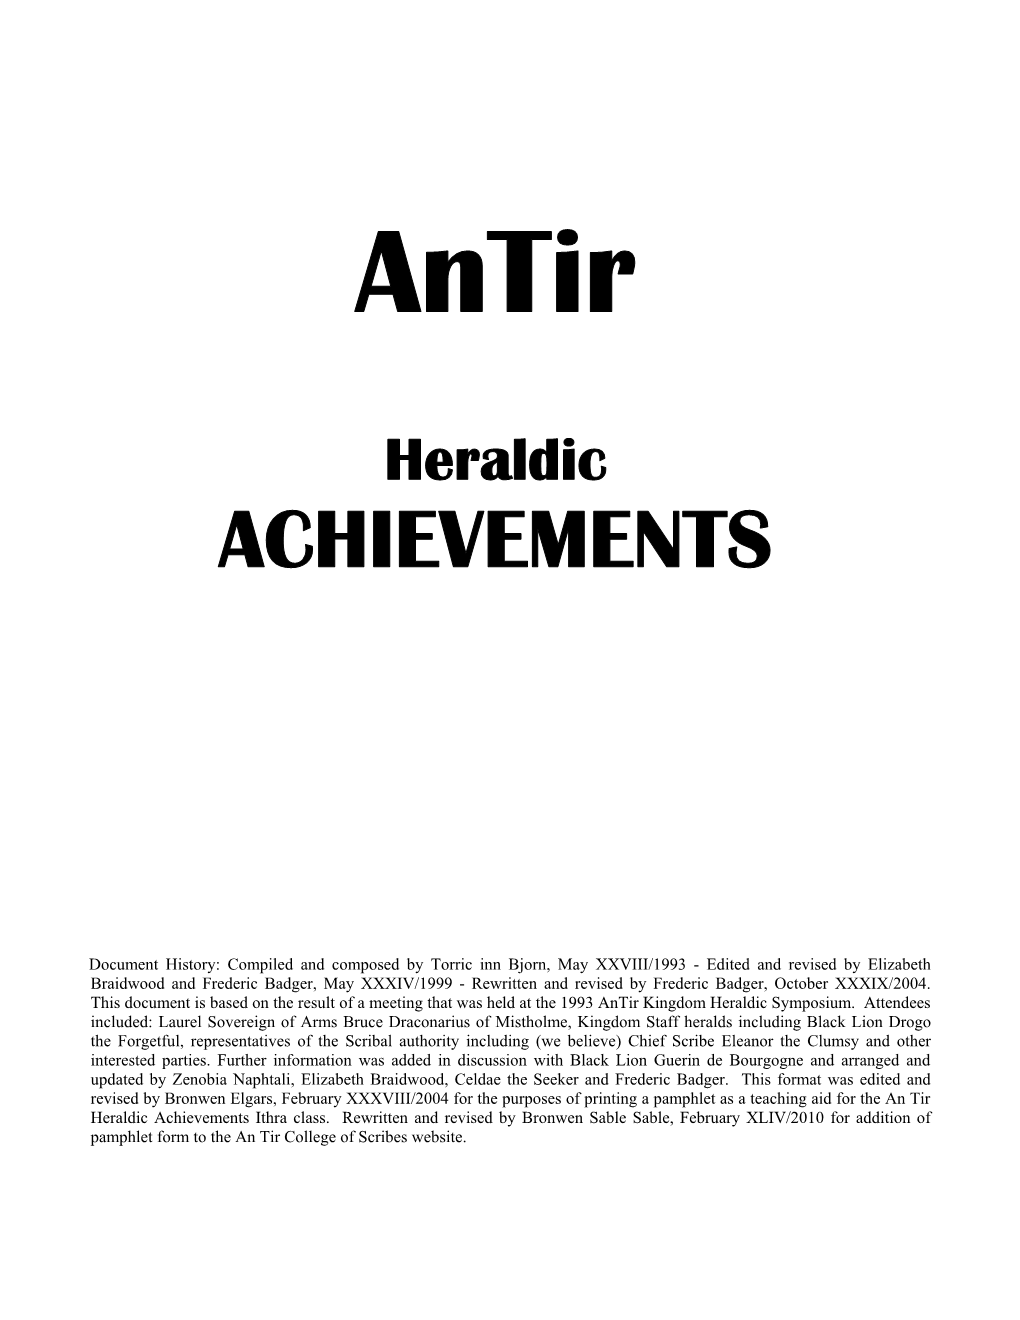 An Tir Heraldic Achievements Ithra Class